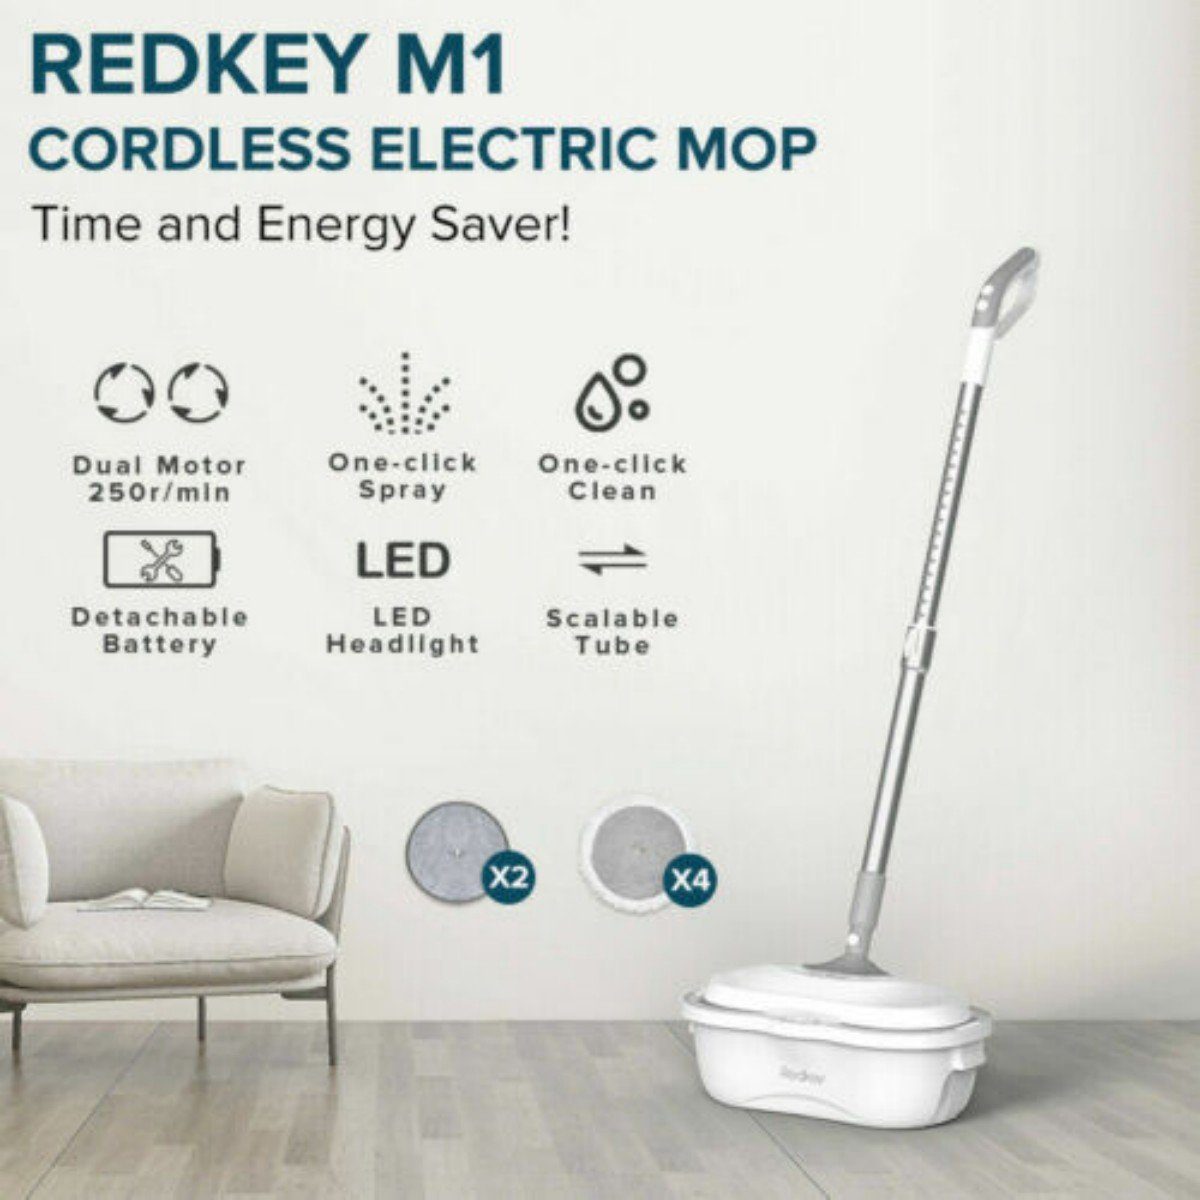 W, Redkey M1, Frisch- LED, und selbstreinigender 2200 Elektro-Mopp, Abwasser, mAh Akku-Wischmopp Wischmopp, 60,00 kabelloser von beutellos,Trennung